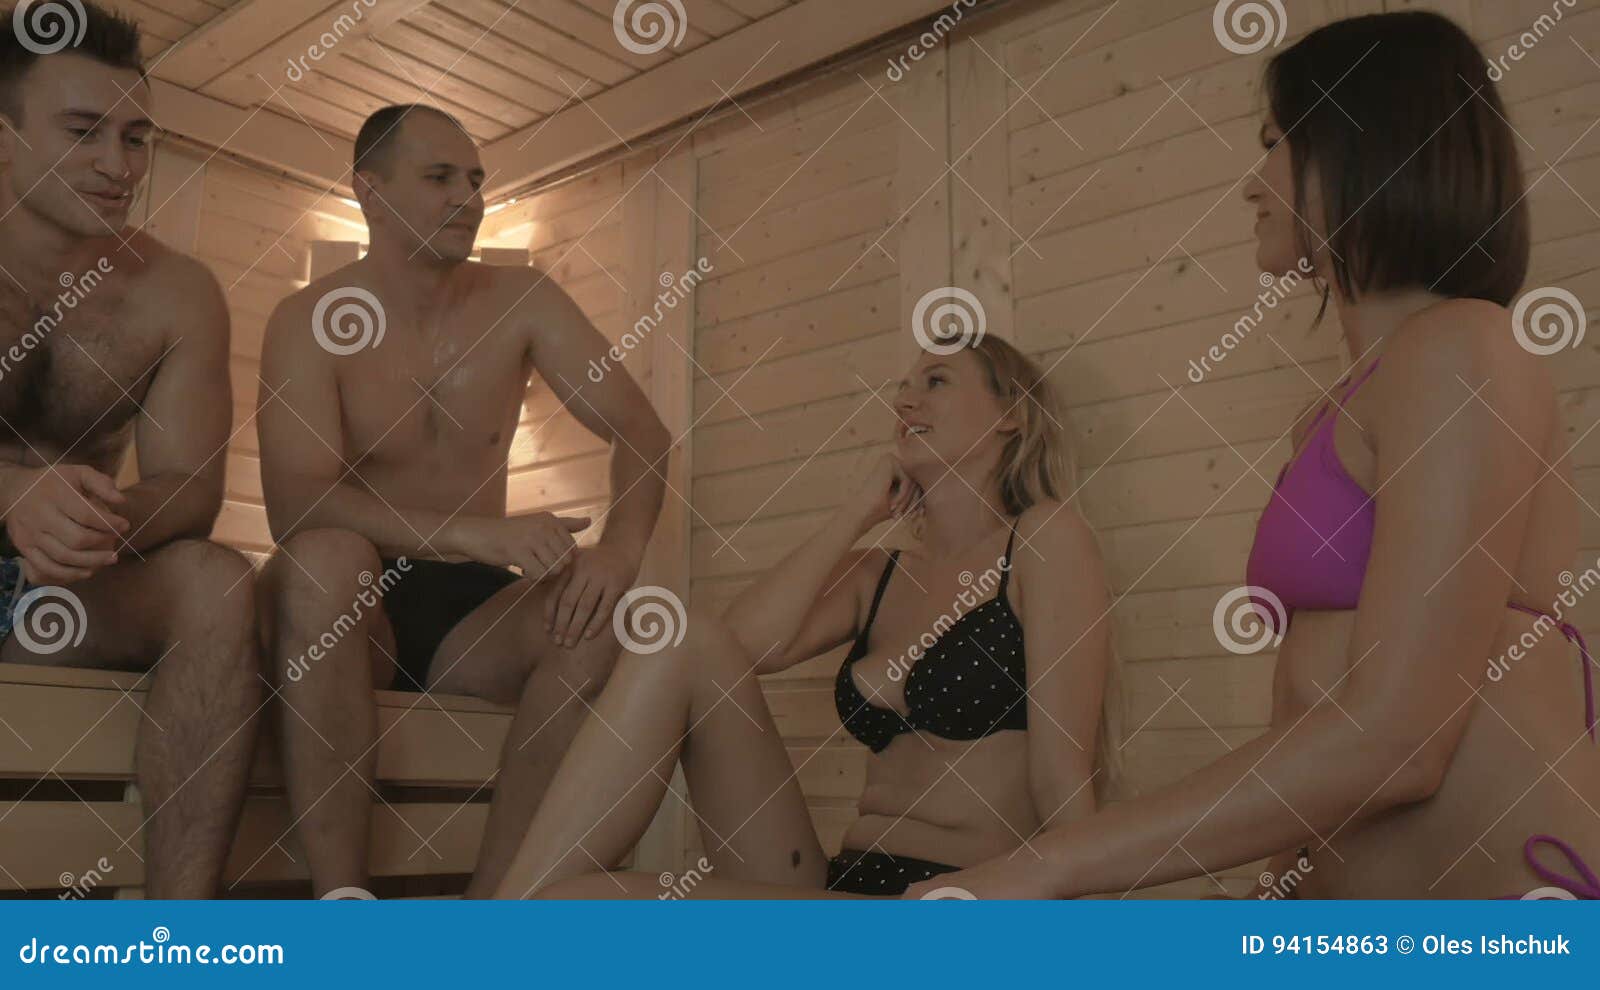 рассказы про мжм в бане фото 34